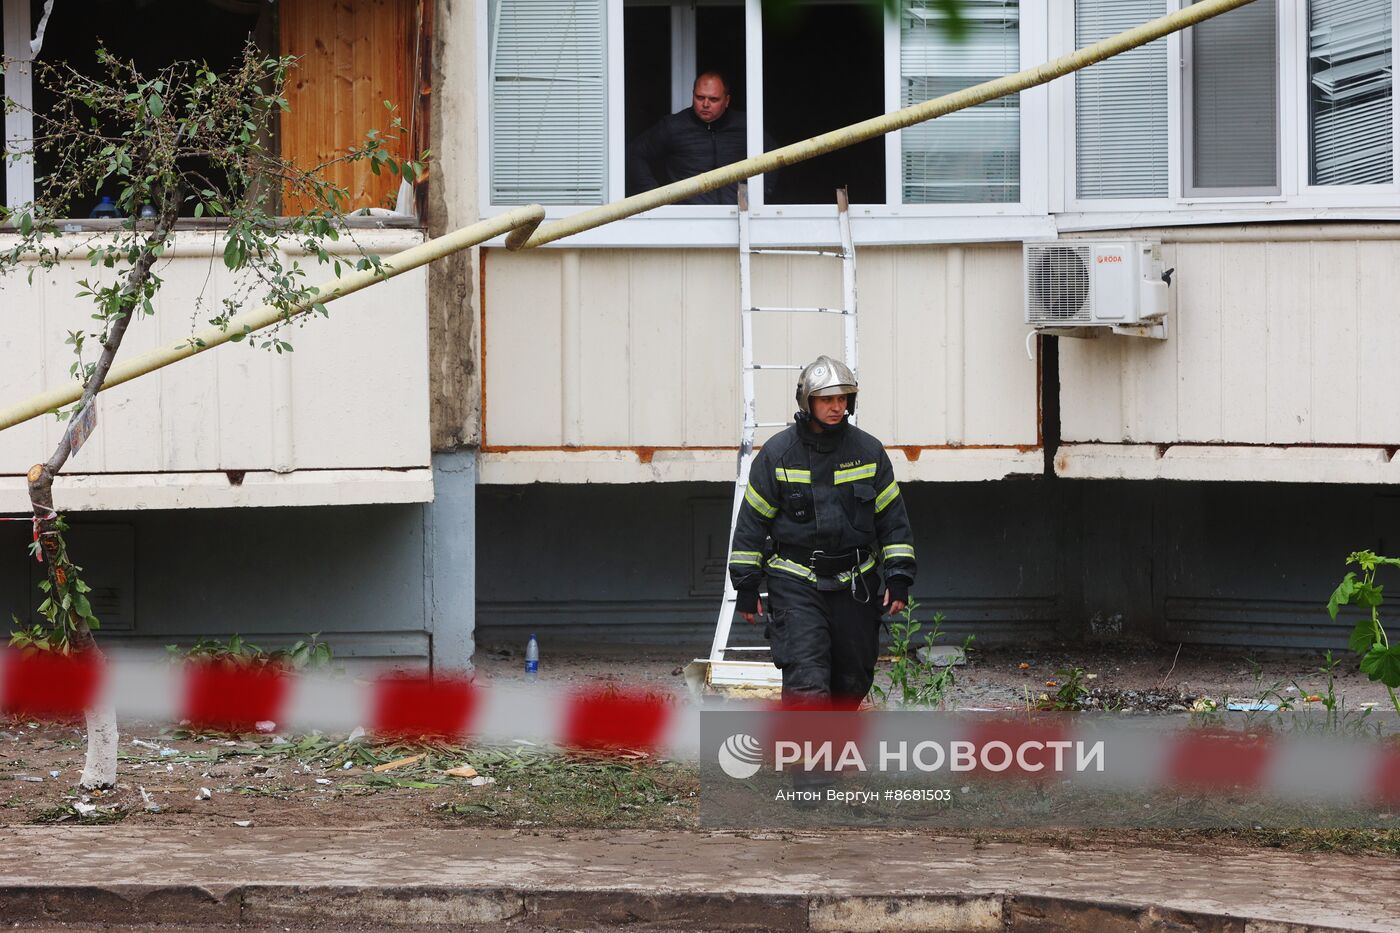 Обстановка возле обрушившегося жилого дома в Белгороде